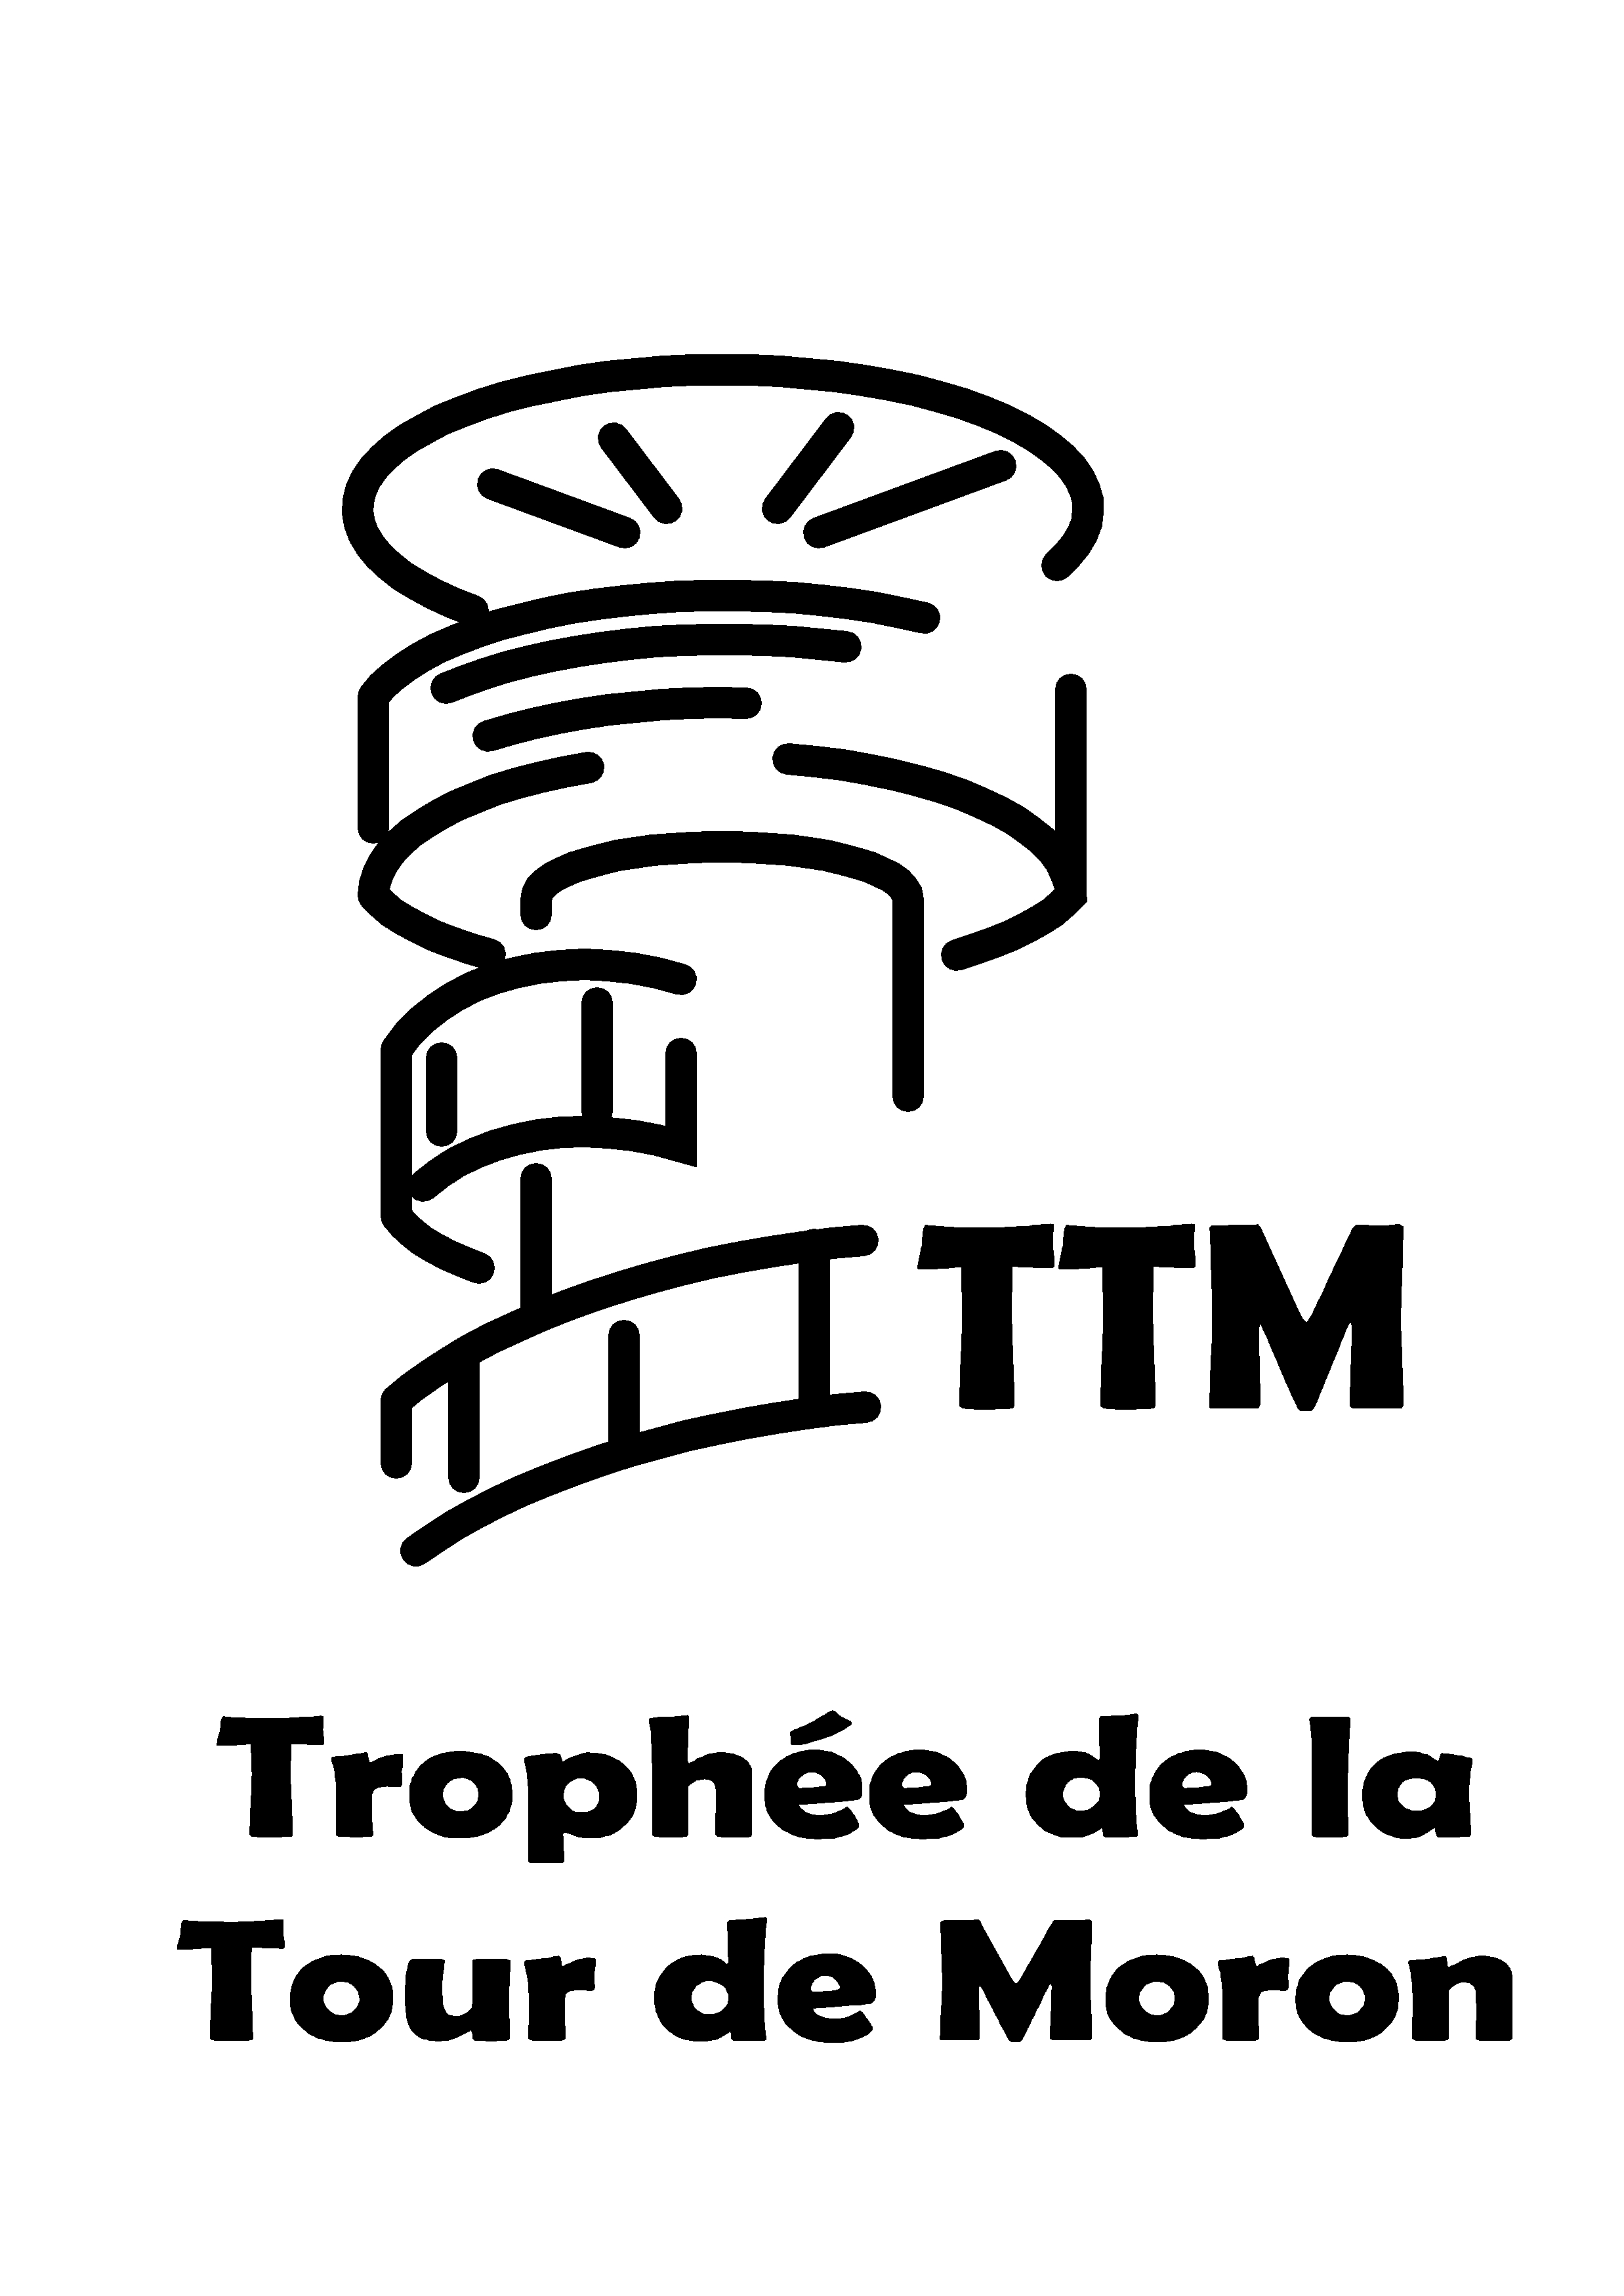 8. Trophée de la Tour de Moron